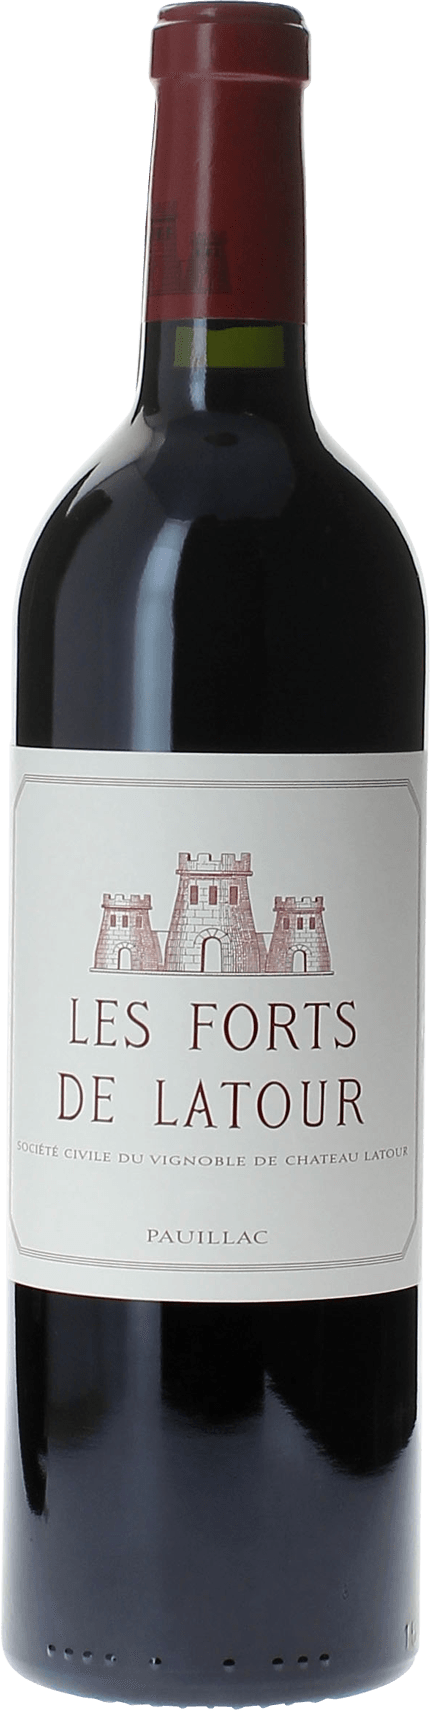 Les forts de latour 2008 2me vin de LATOUR Pauillac, Bordeaux rouge